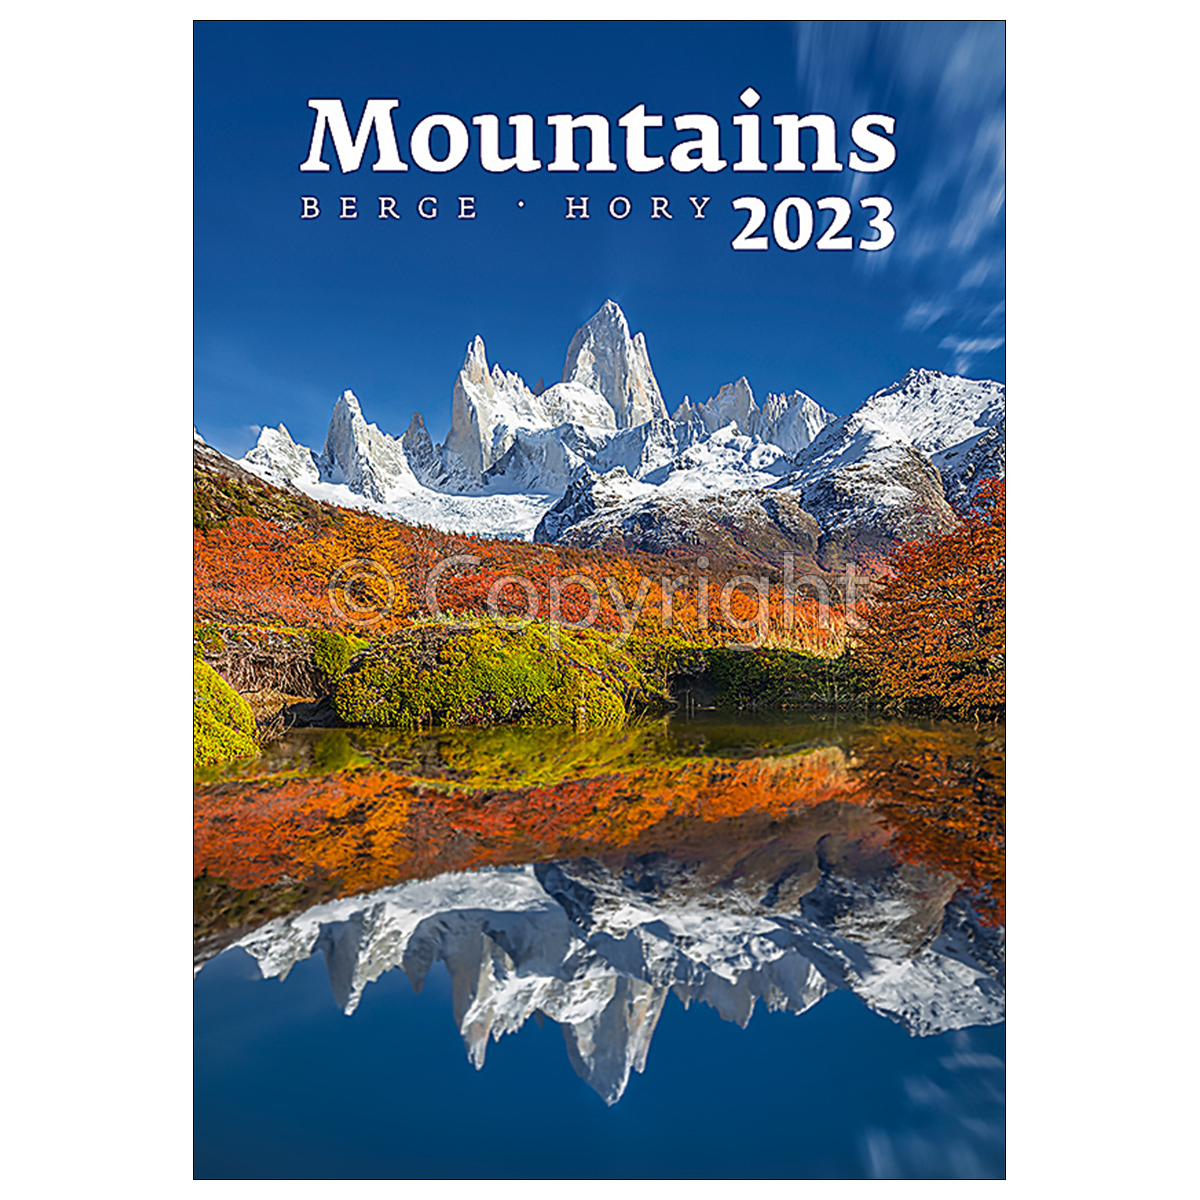 Mountains, képes falinaptár 2023